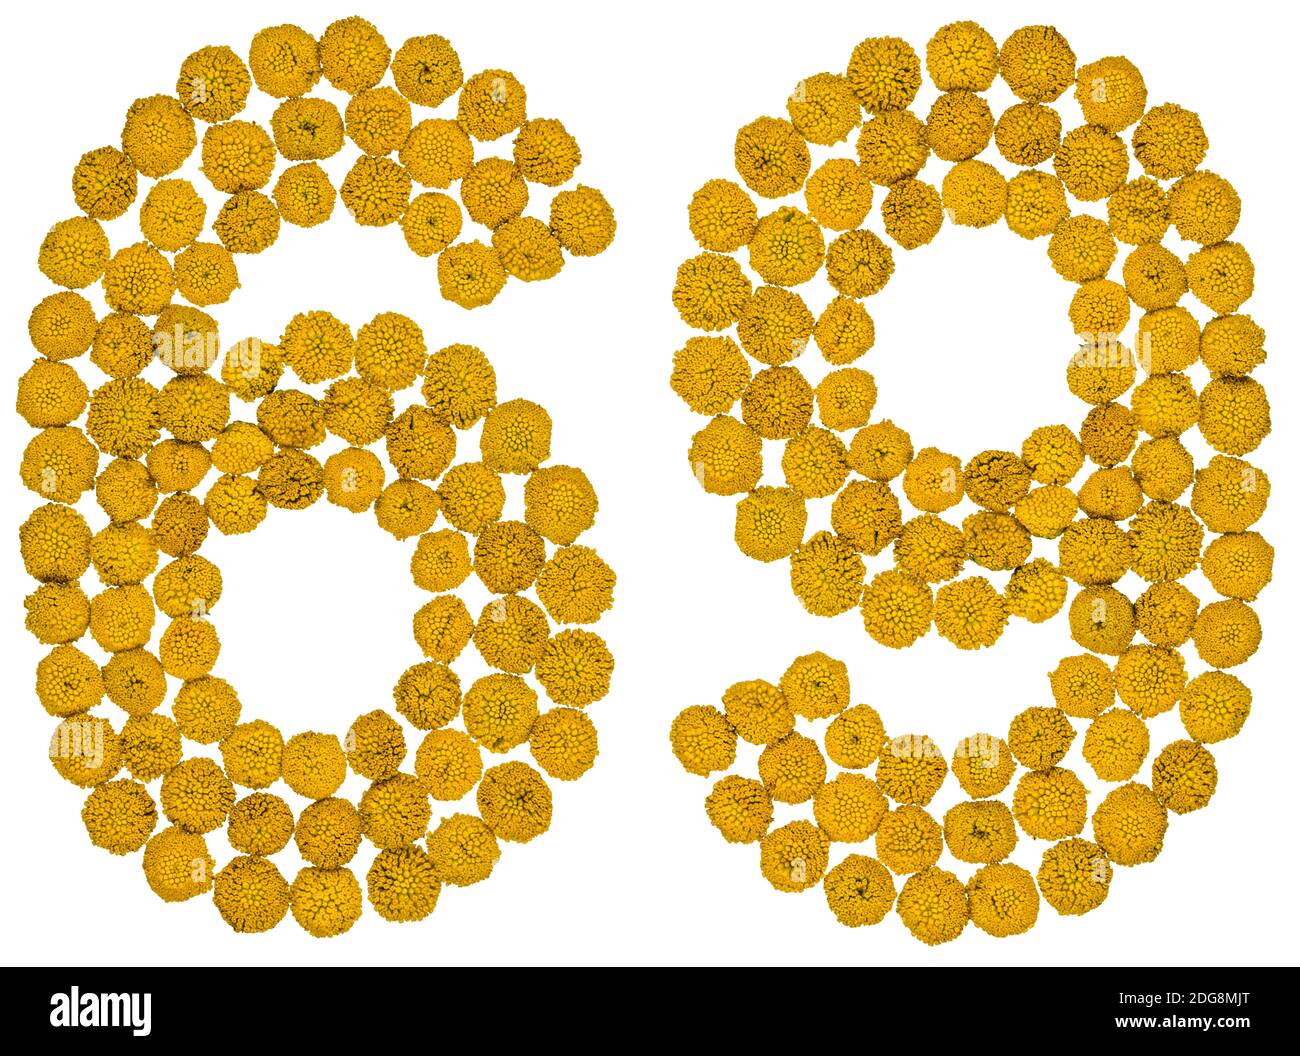 Chiffre arabe 69, soixante neuf, de fleurs jaunes de tansy, isolées sur fond blanc Banque D'Images